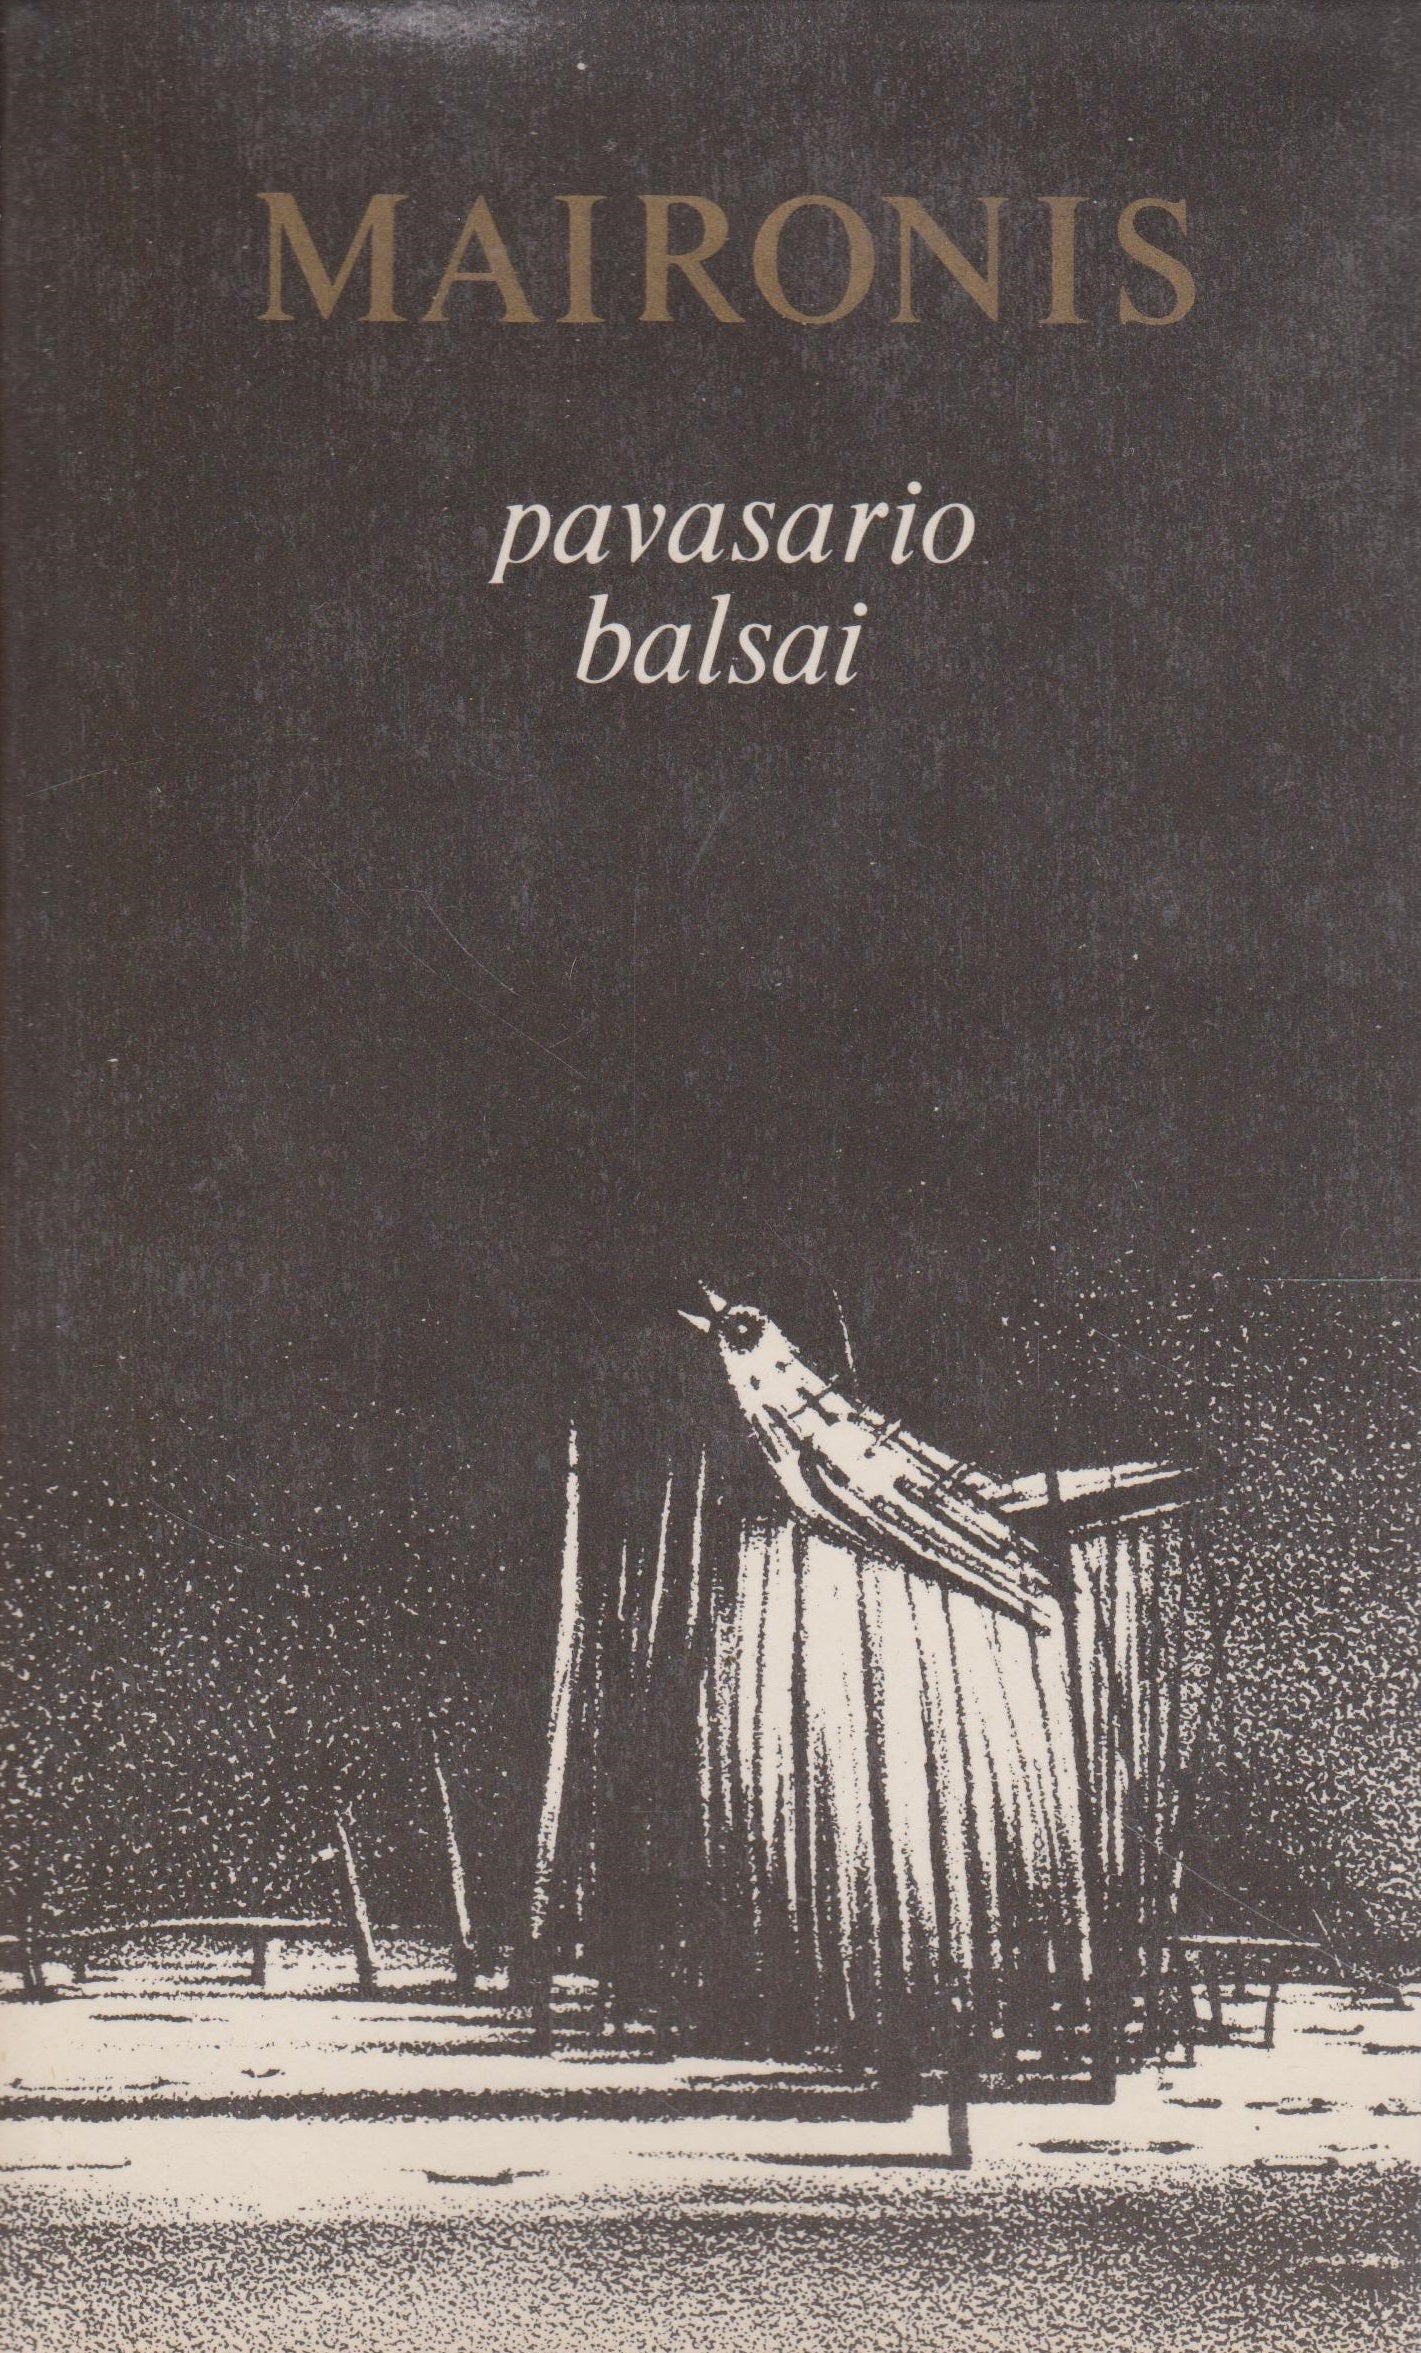 Maironis - Pavasario balsai, 1986